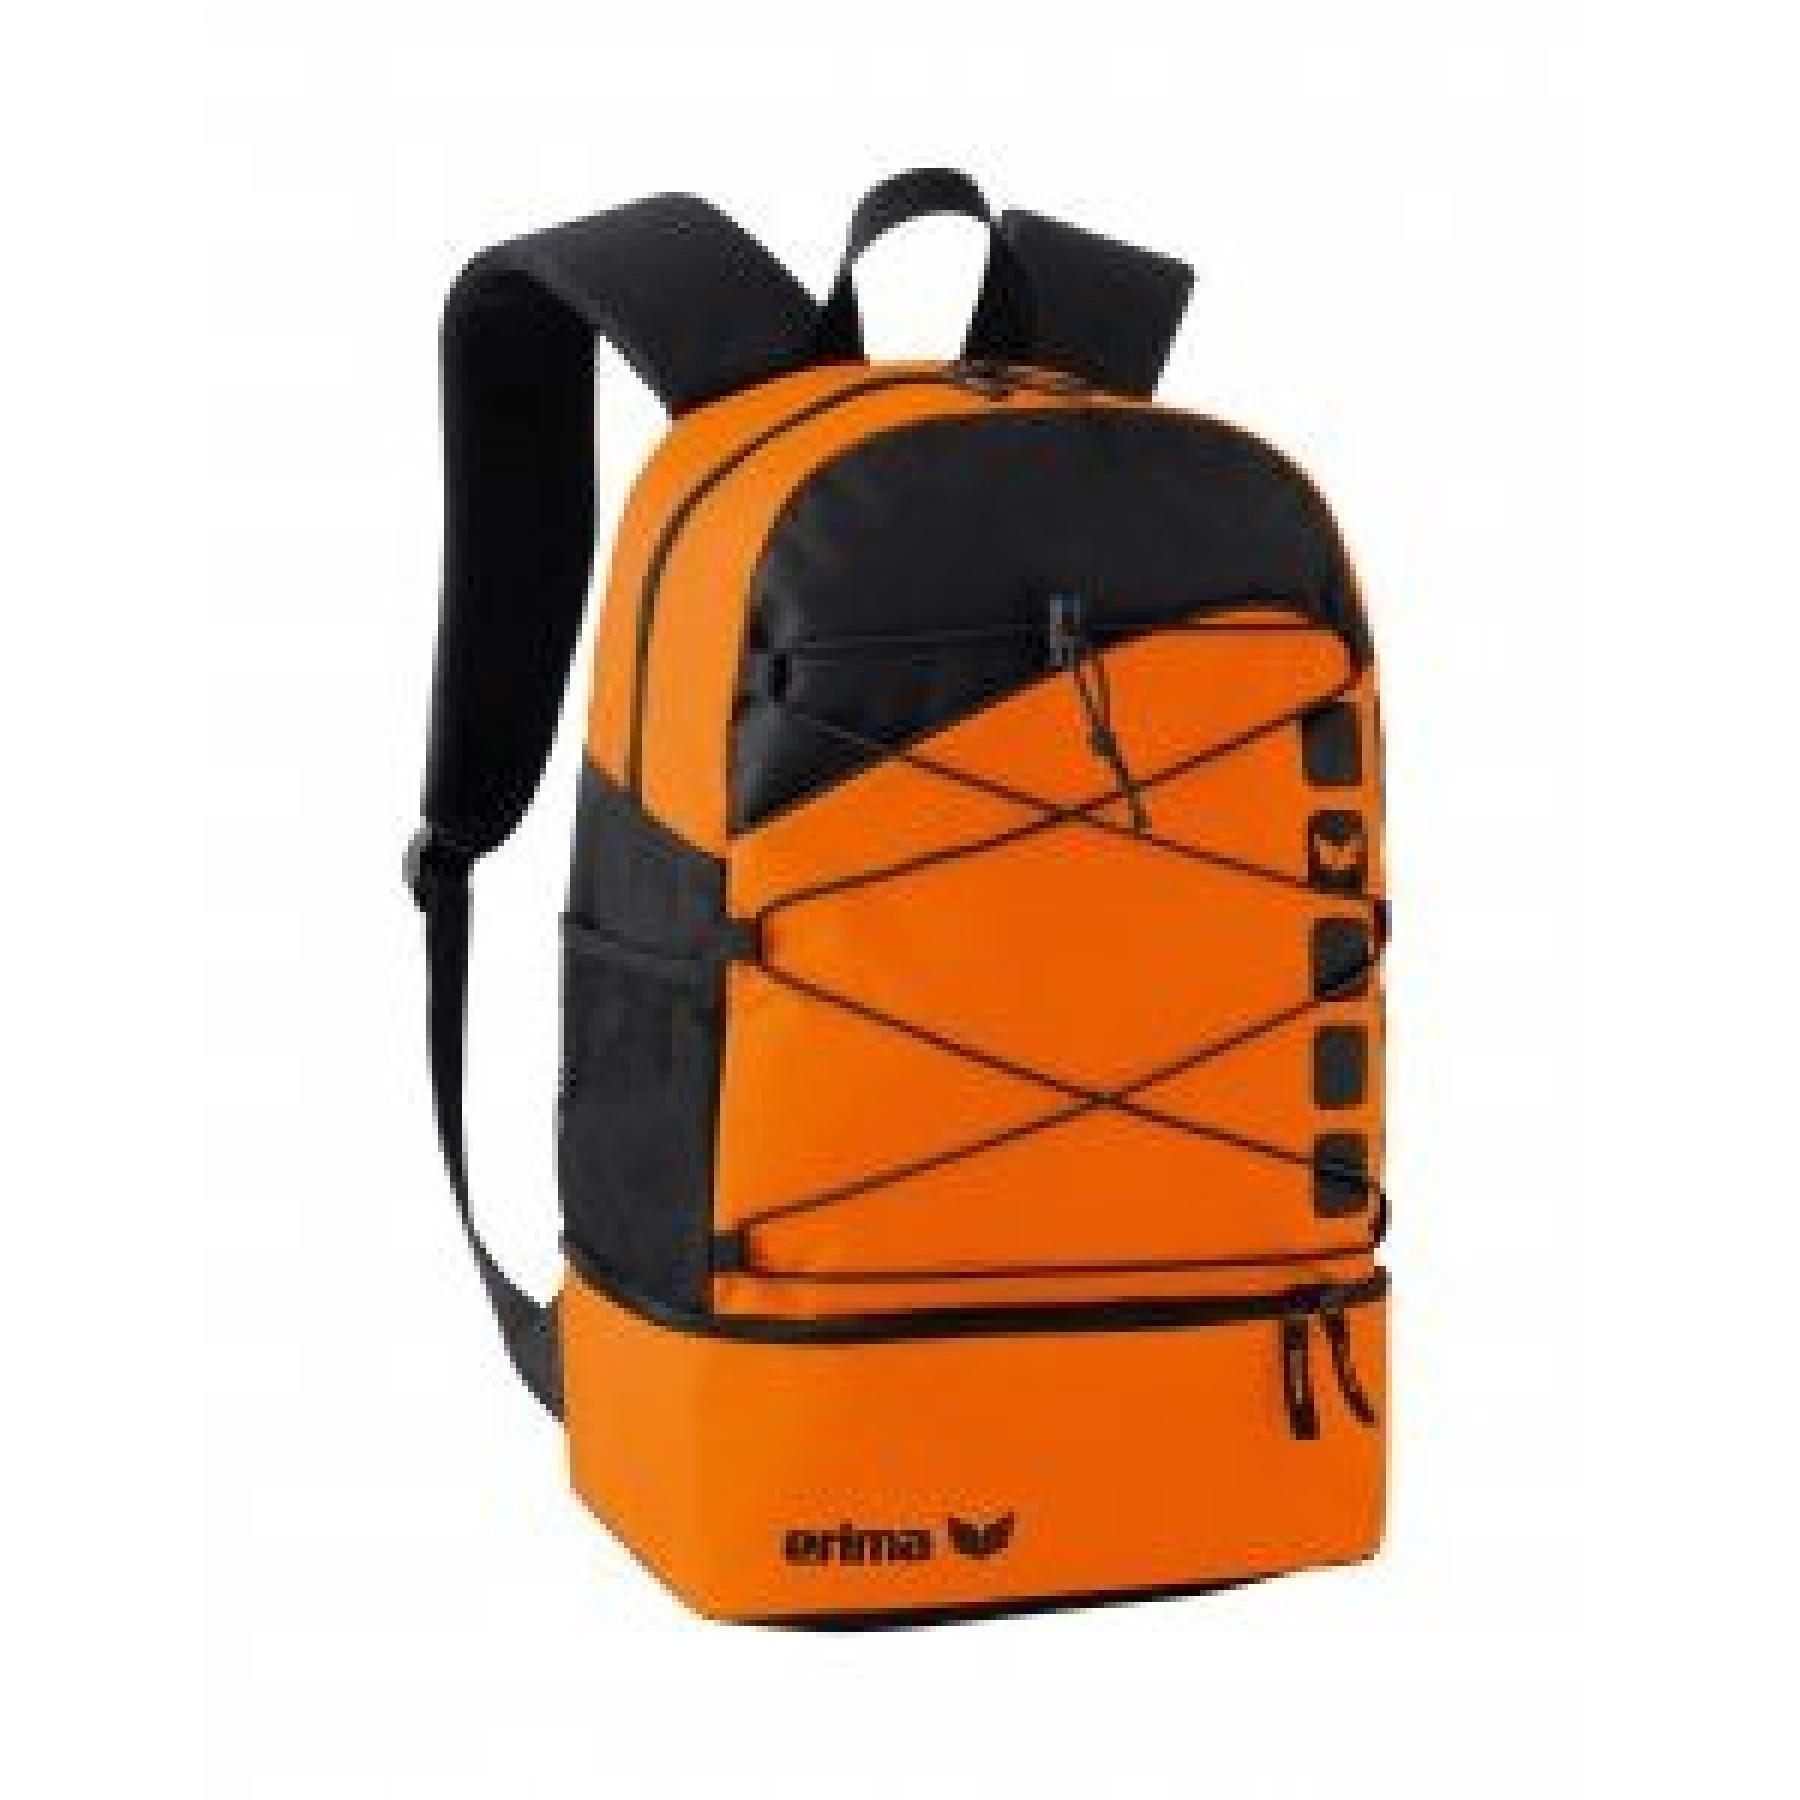 Backpack Erima multifonctions avec compartiment inférieur